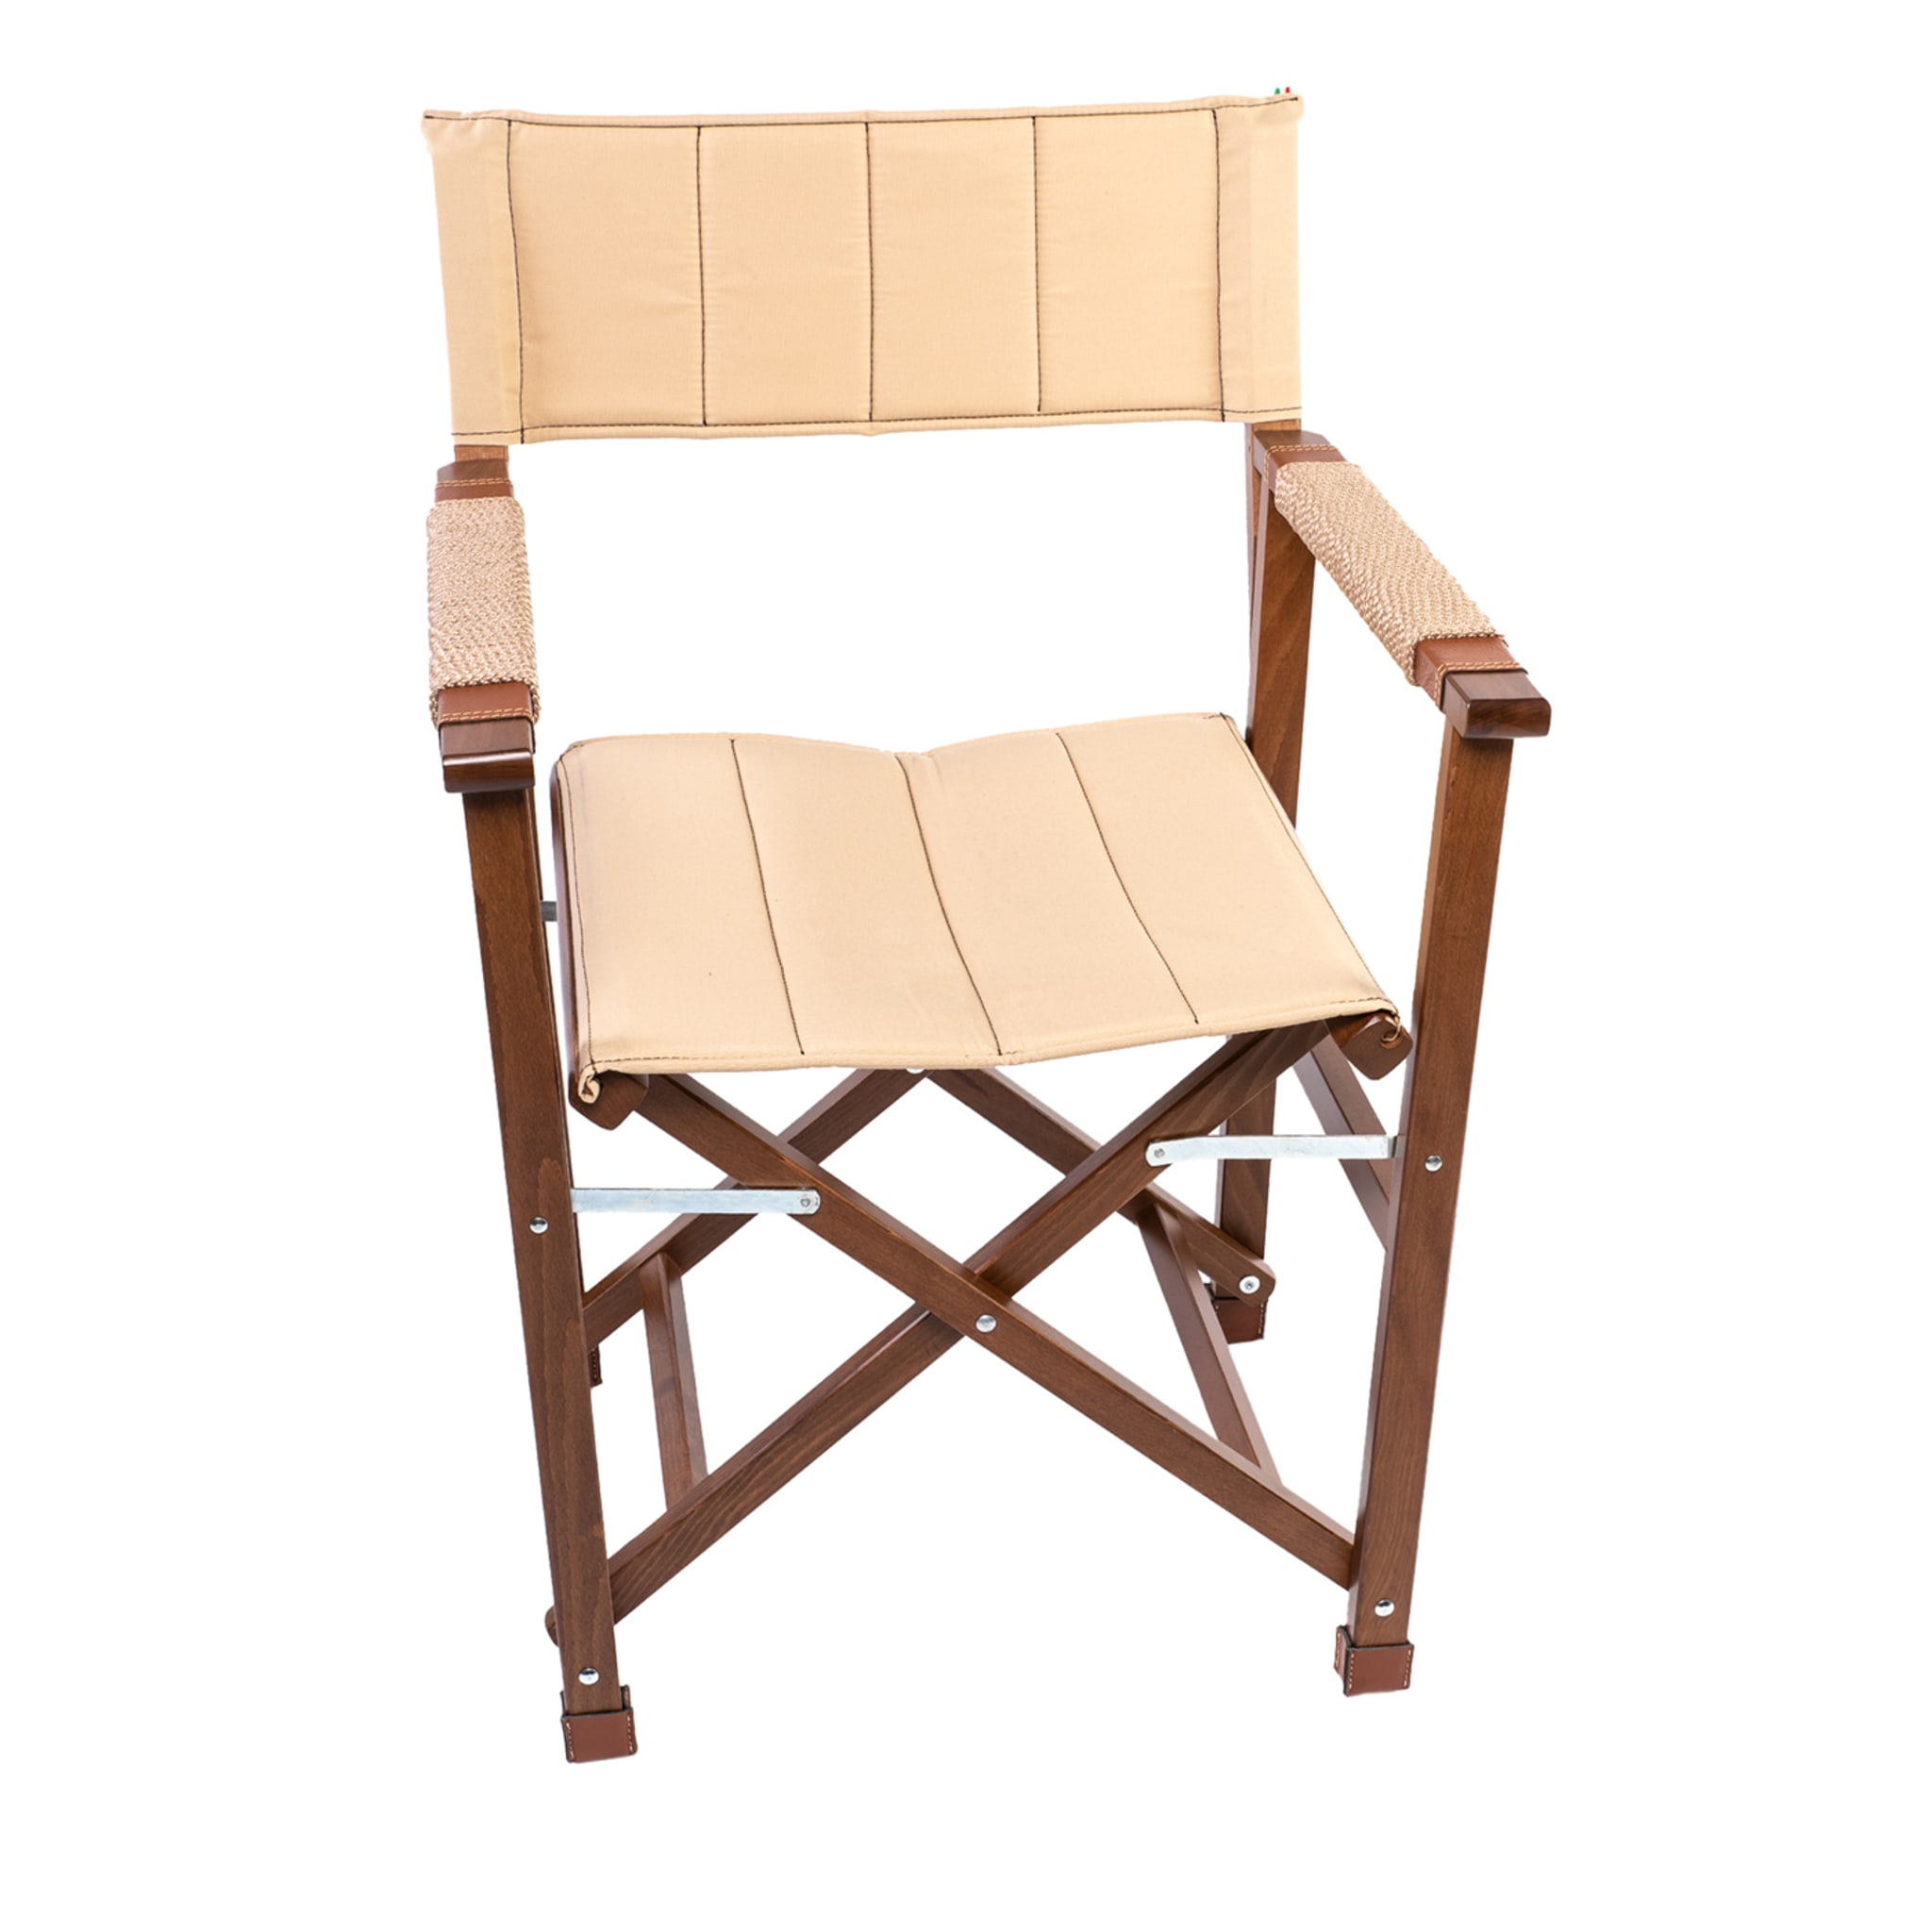 Beige Wooden Director's Chair - Capri's model - Main view